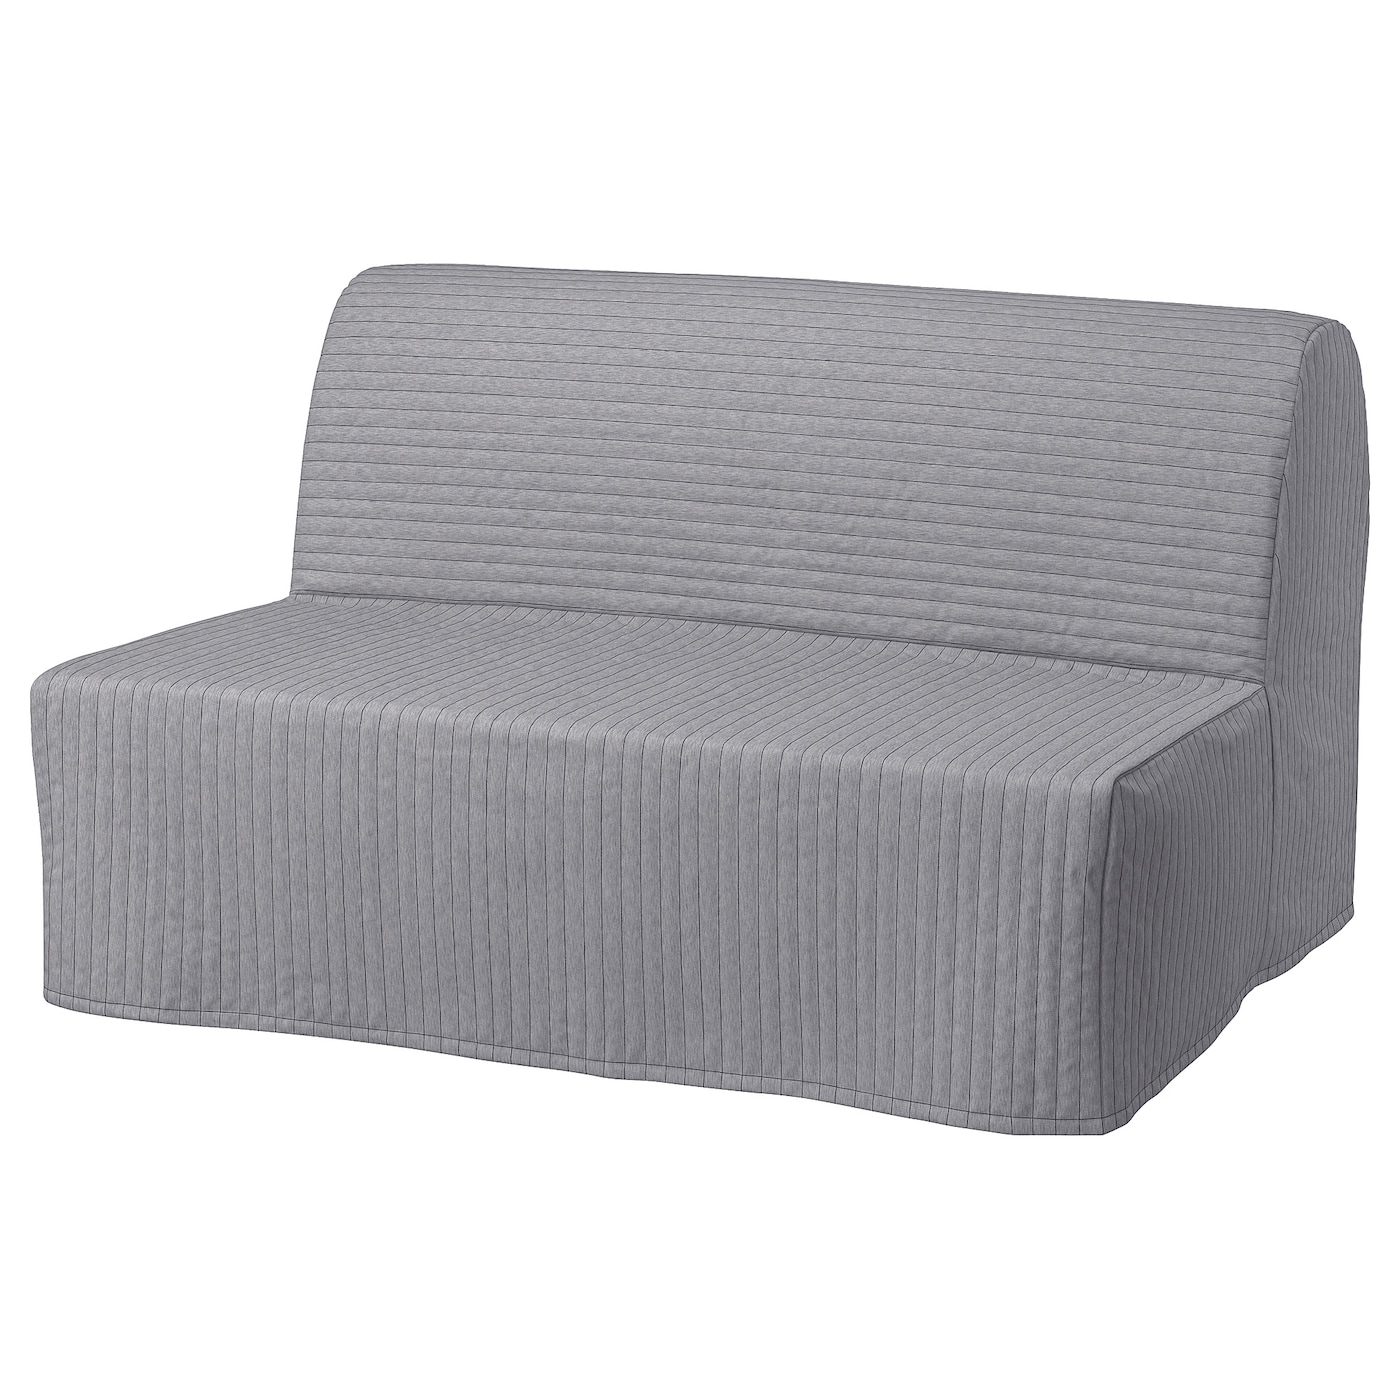 ИКЕА LYCKSELE MURBO 2-місний диван-ліжко - Knisa світло-сірий, 093.870.40